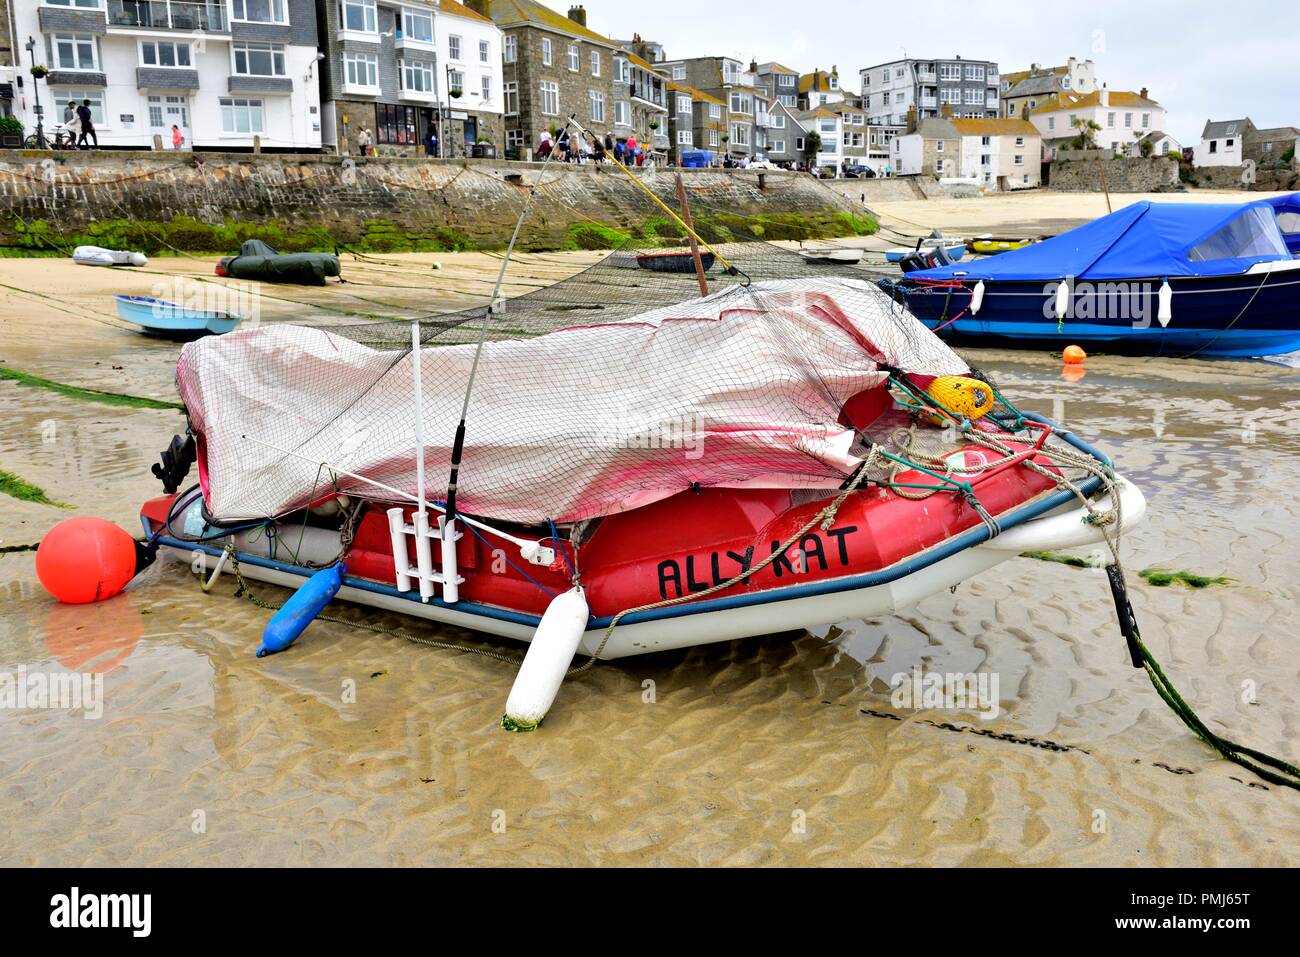 Ein Boot mit dem Namen Ally Katze in St Ives Harbour, bei Ebbe, Cornwall, England, Großbritannien Stockfoto